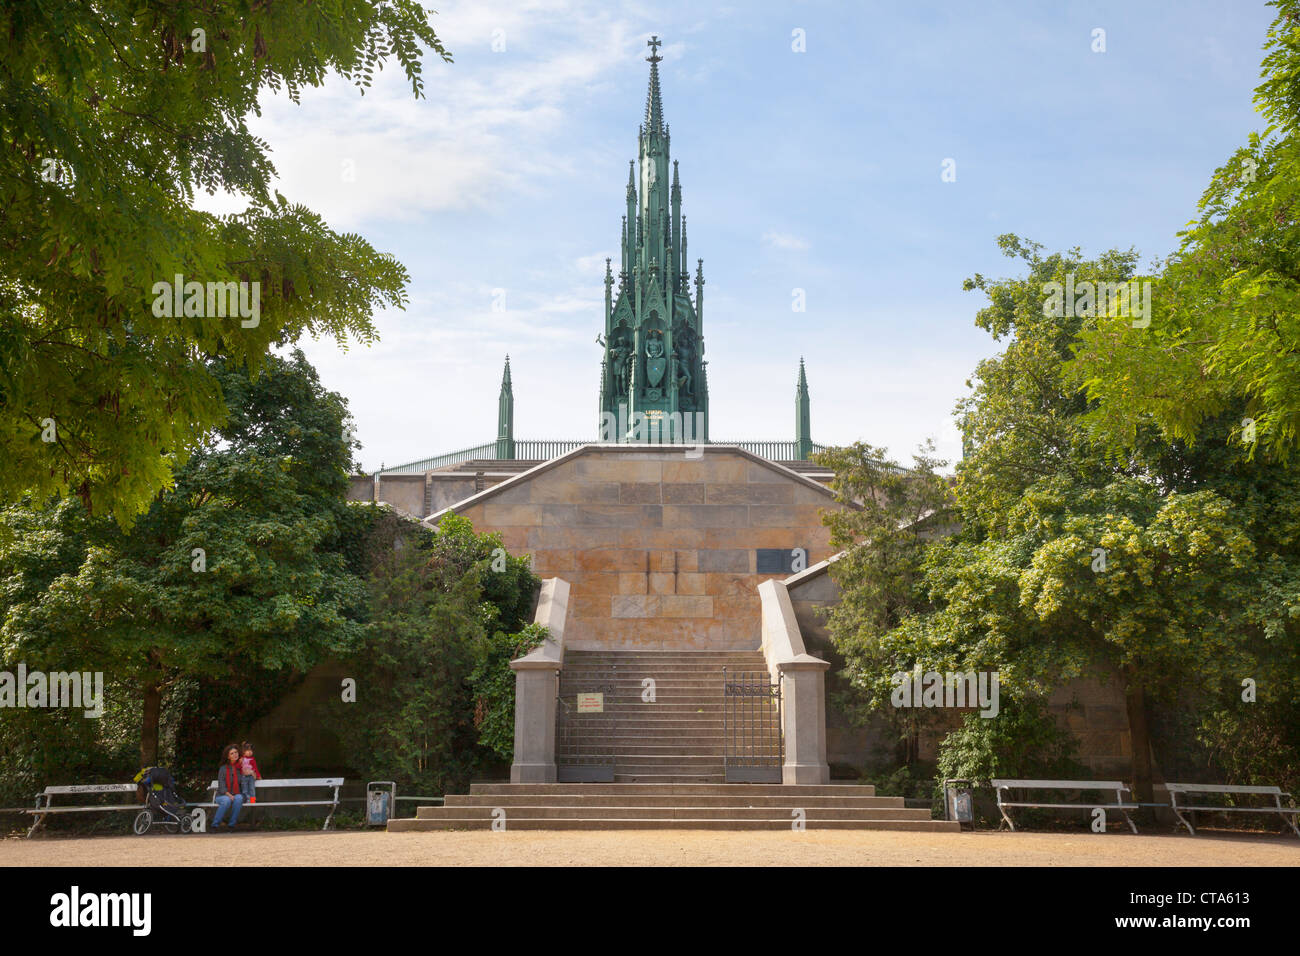 Pour le Monument national prussien des guerres de libération, Viktoriapark, Kreuzberg, Berlin, Allemagne Banque D'Images